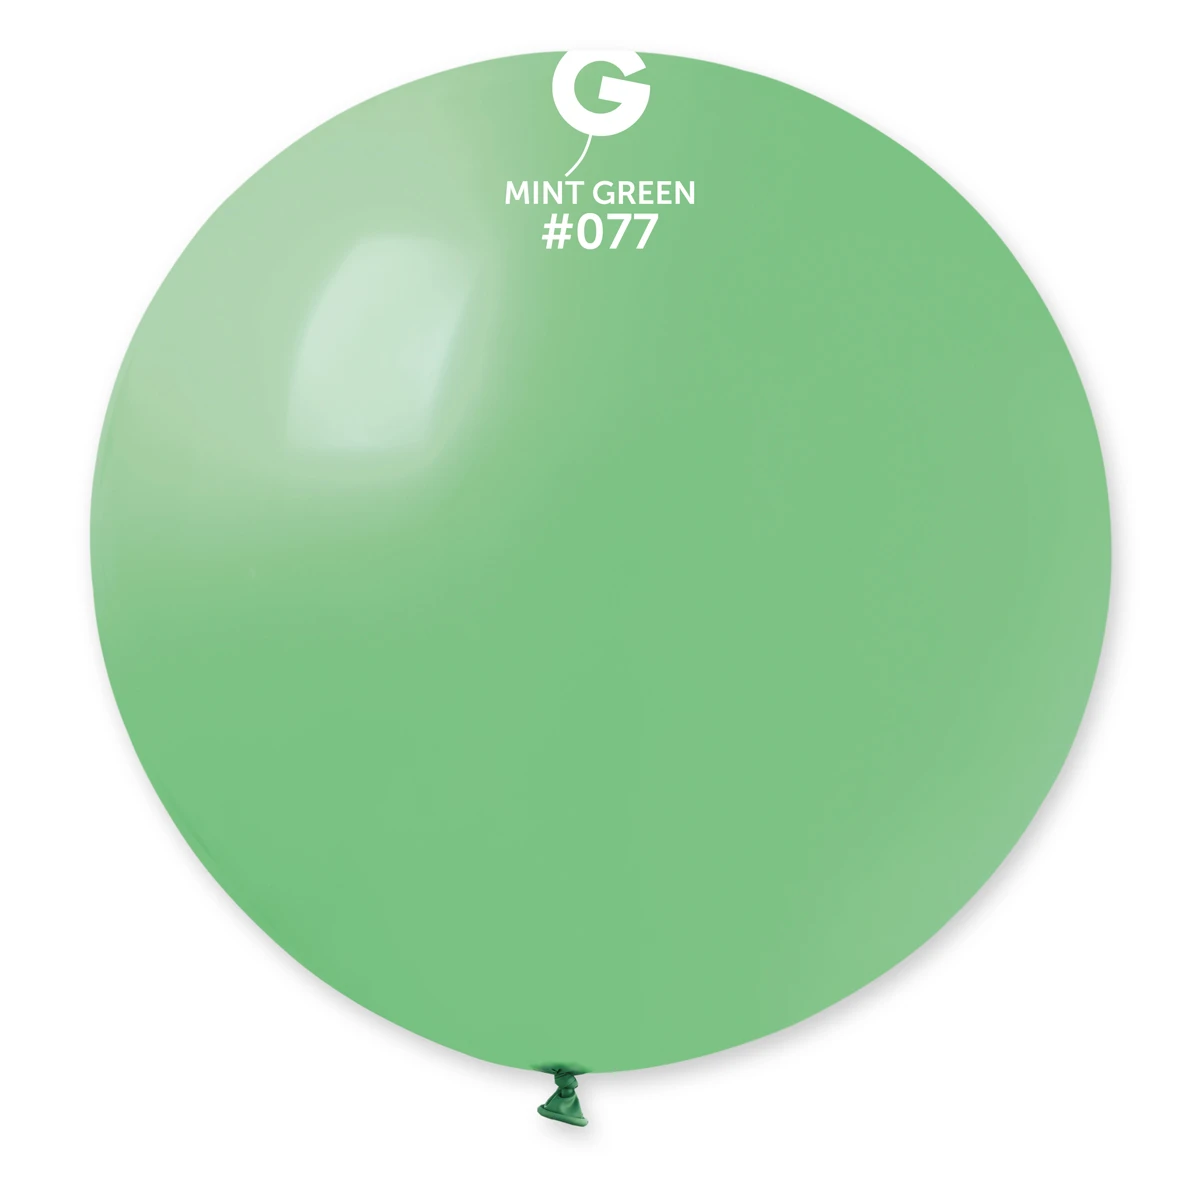 Standard Mint Green #077 31in – 1 piece